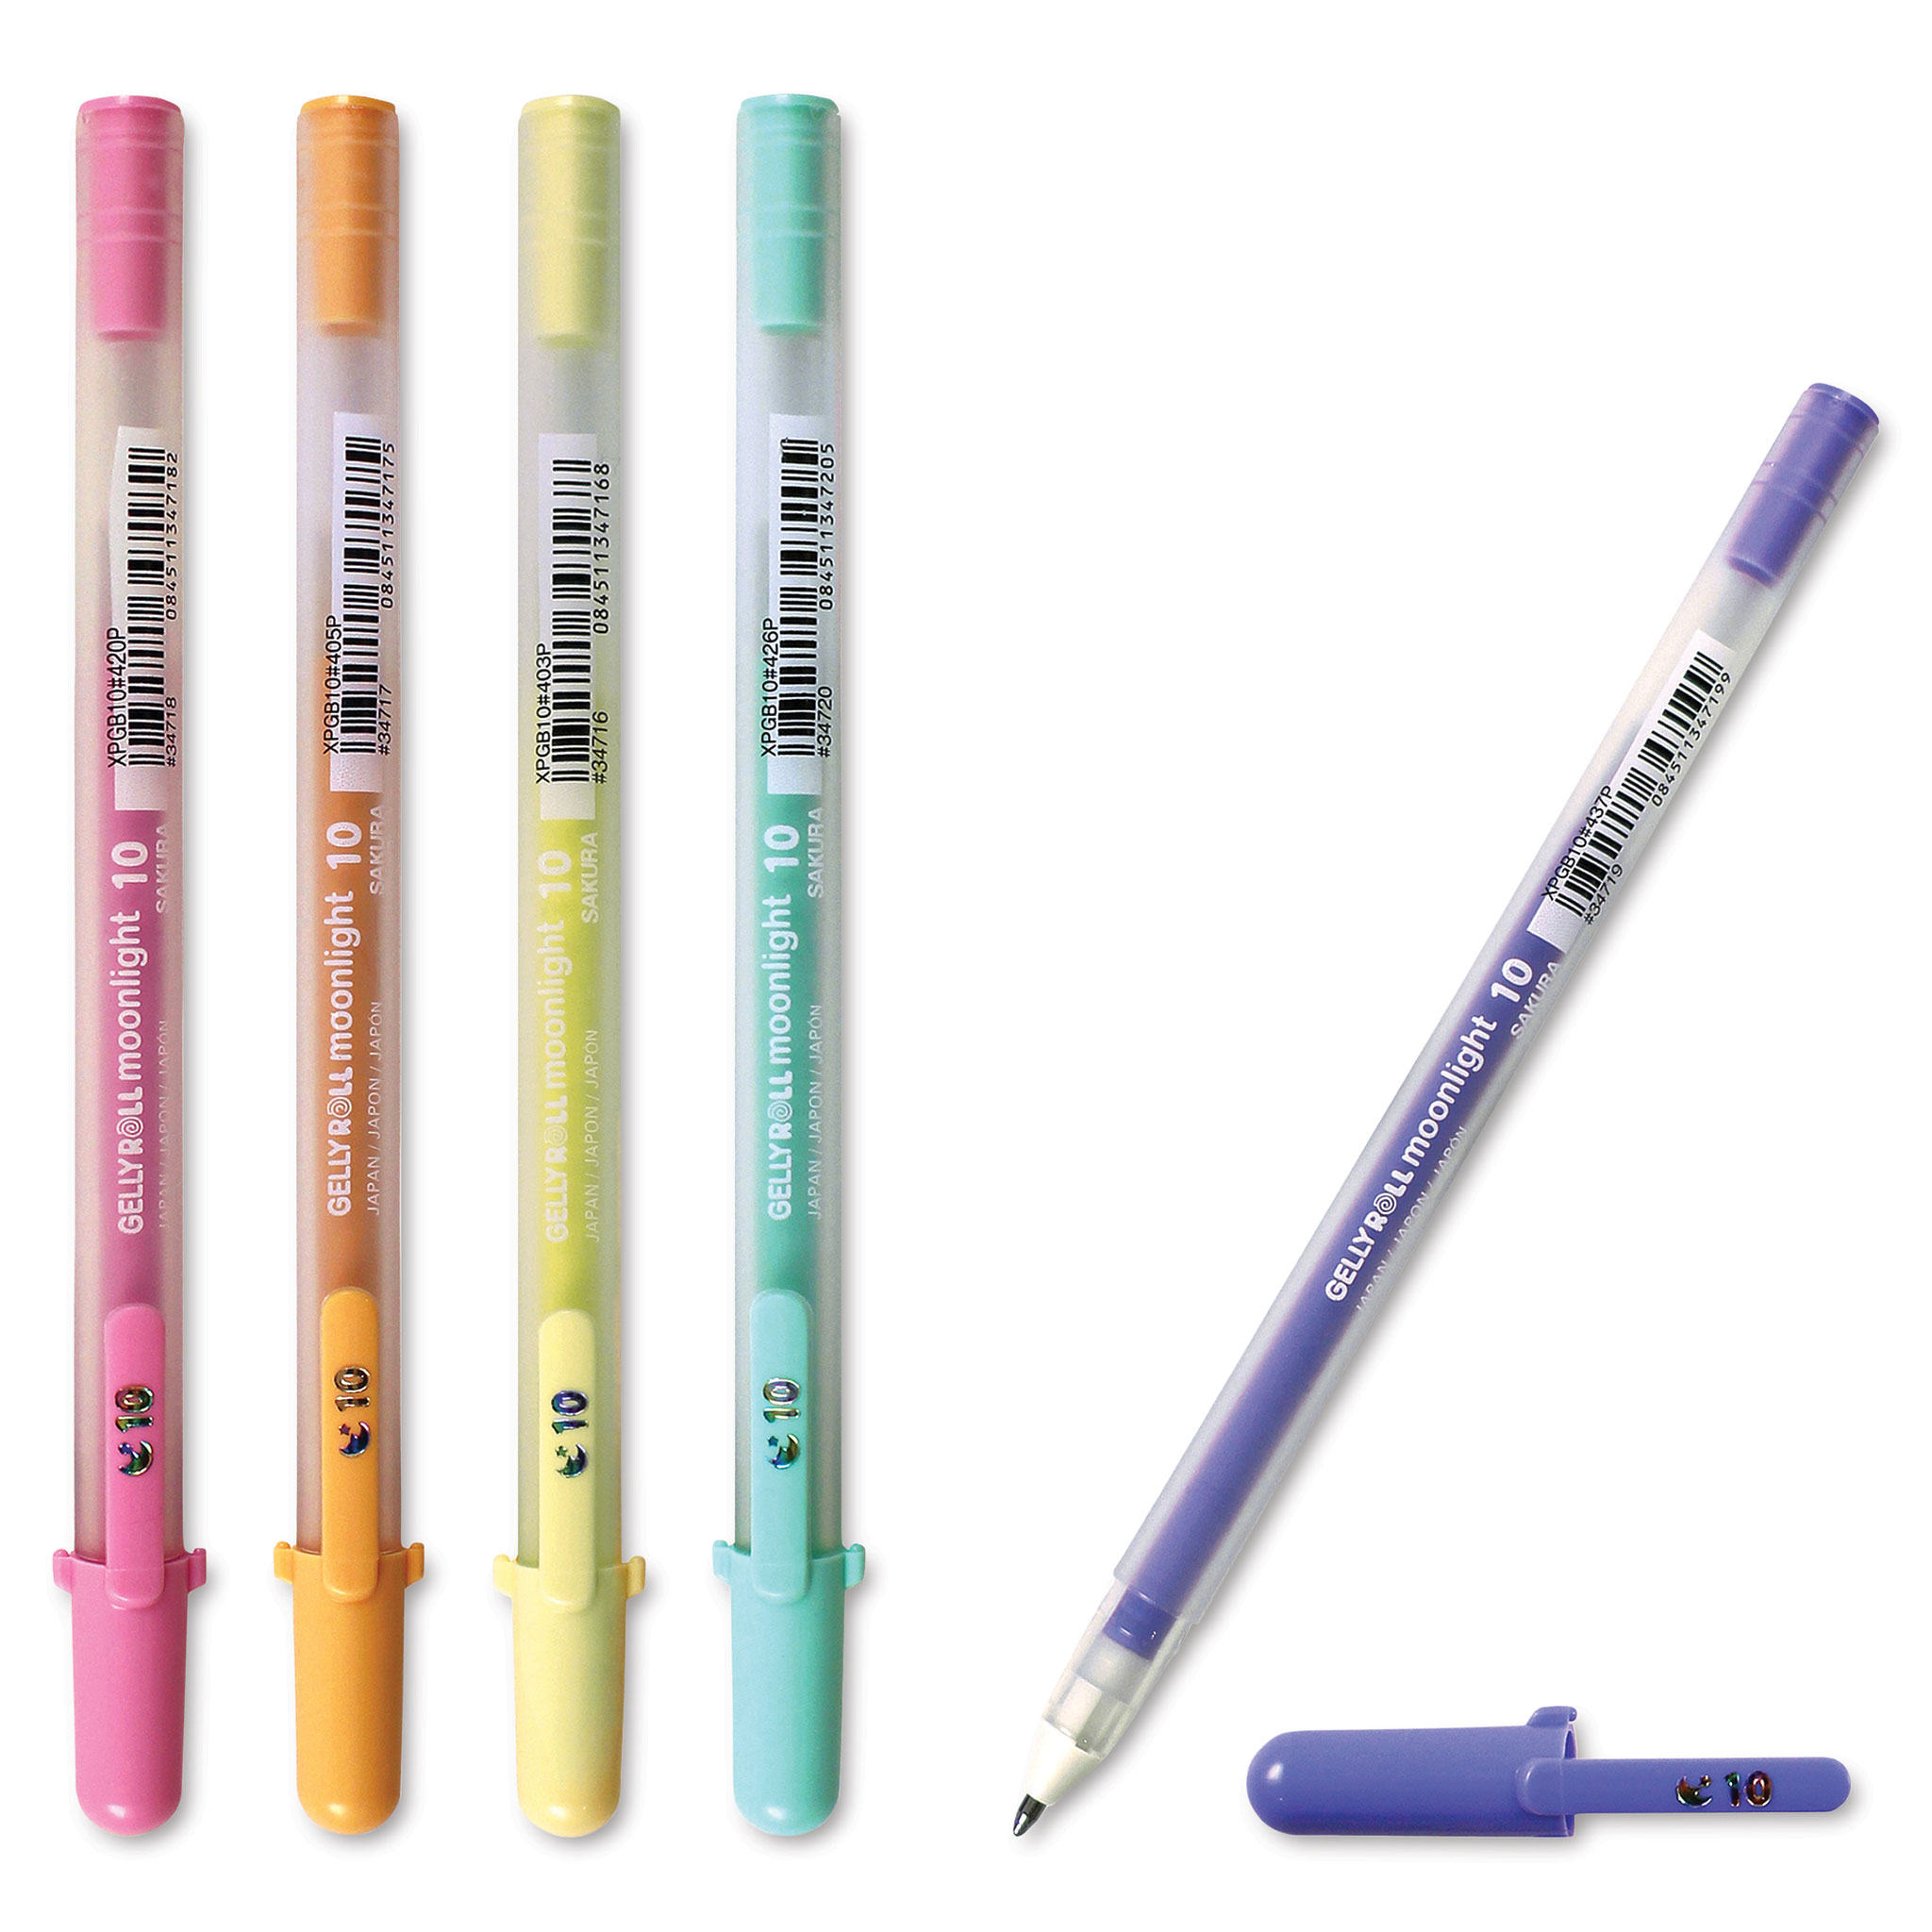 Sakura Gelly Roll Moonlight Gel Pen, Size 06 — ArtSnacks